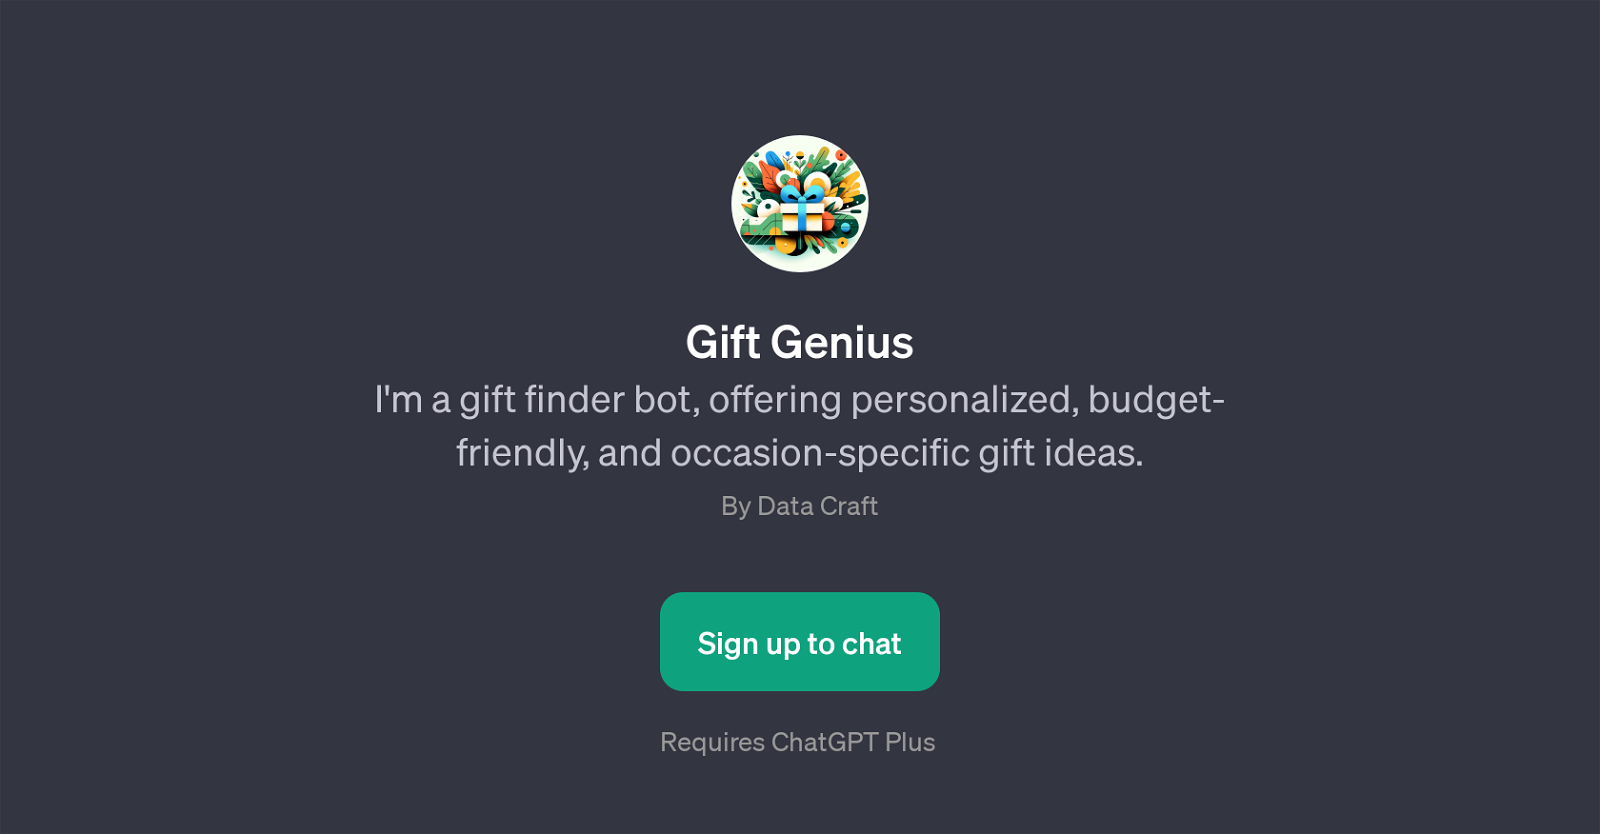 Gift Genius website